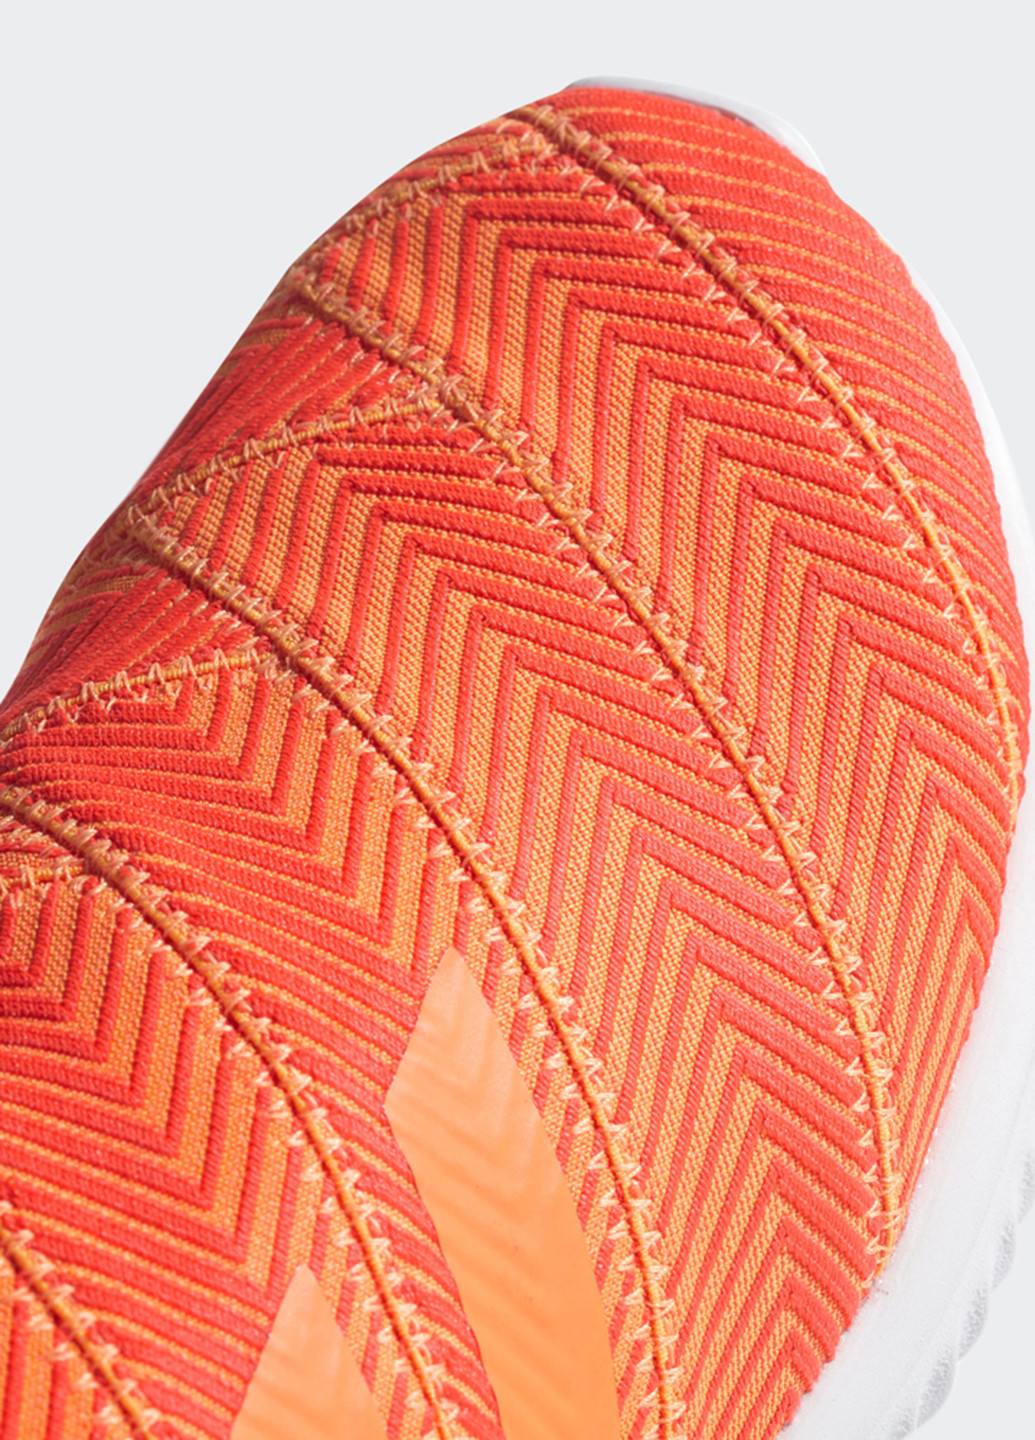 Оранжевые всесезонные кроссовки adidas Nemeziz Tango 18.1